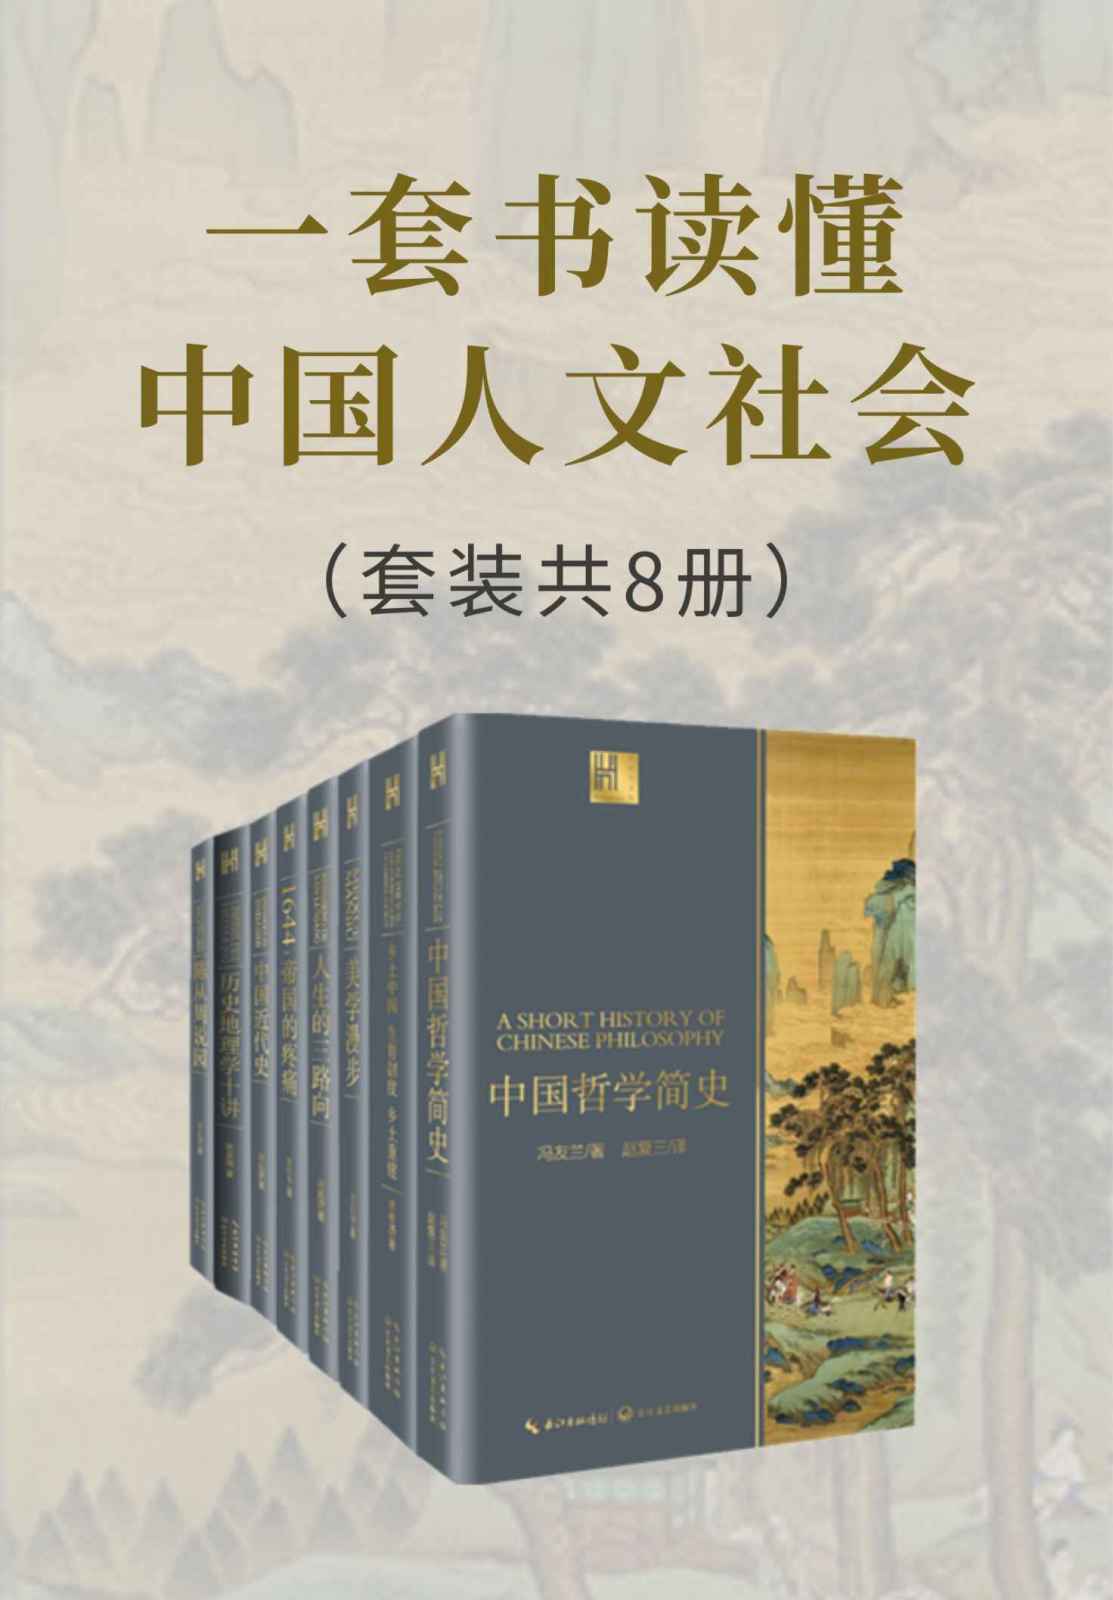 一套书读懂中国人文社会（套装共8册